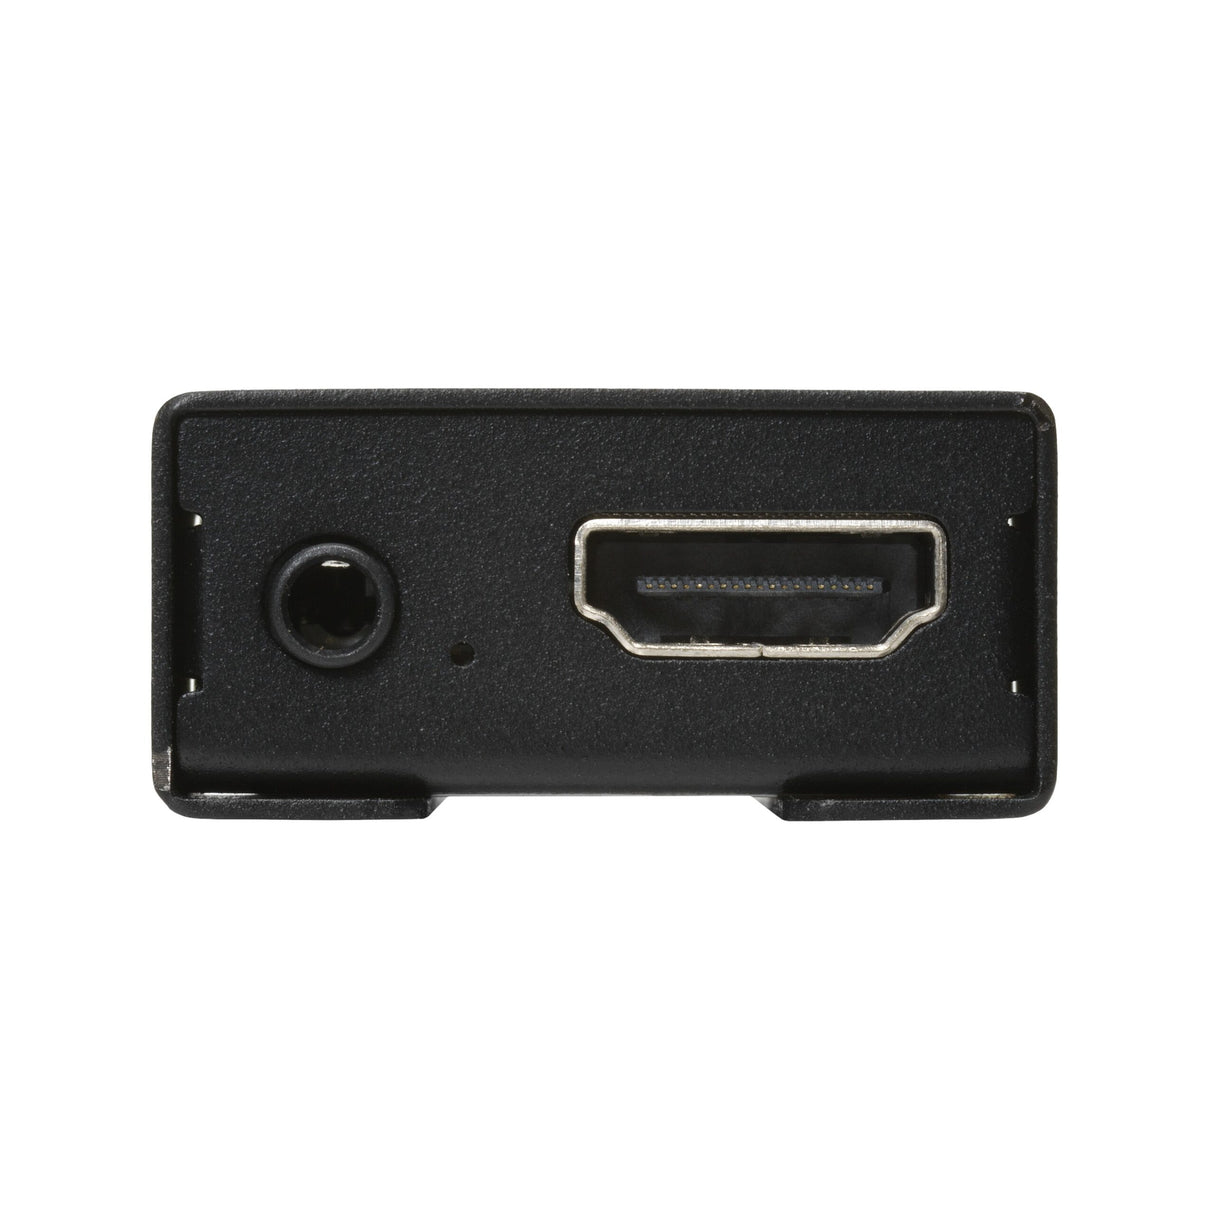 AMX UVC1-4K 4K HDMI to USB Capture Device